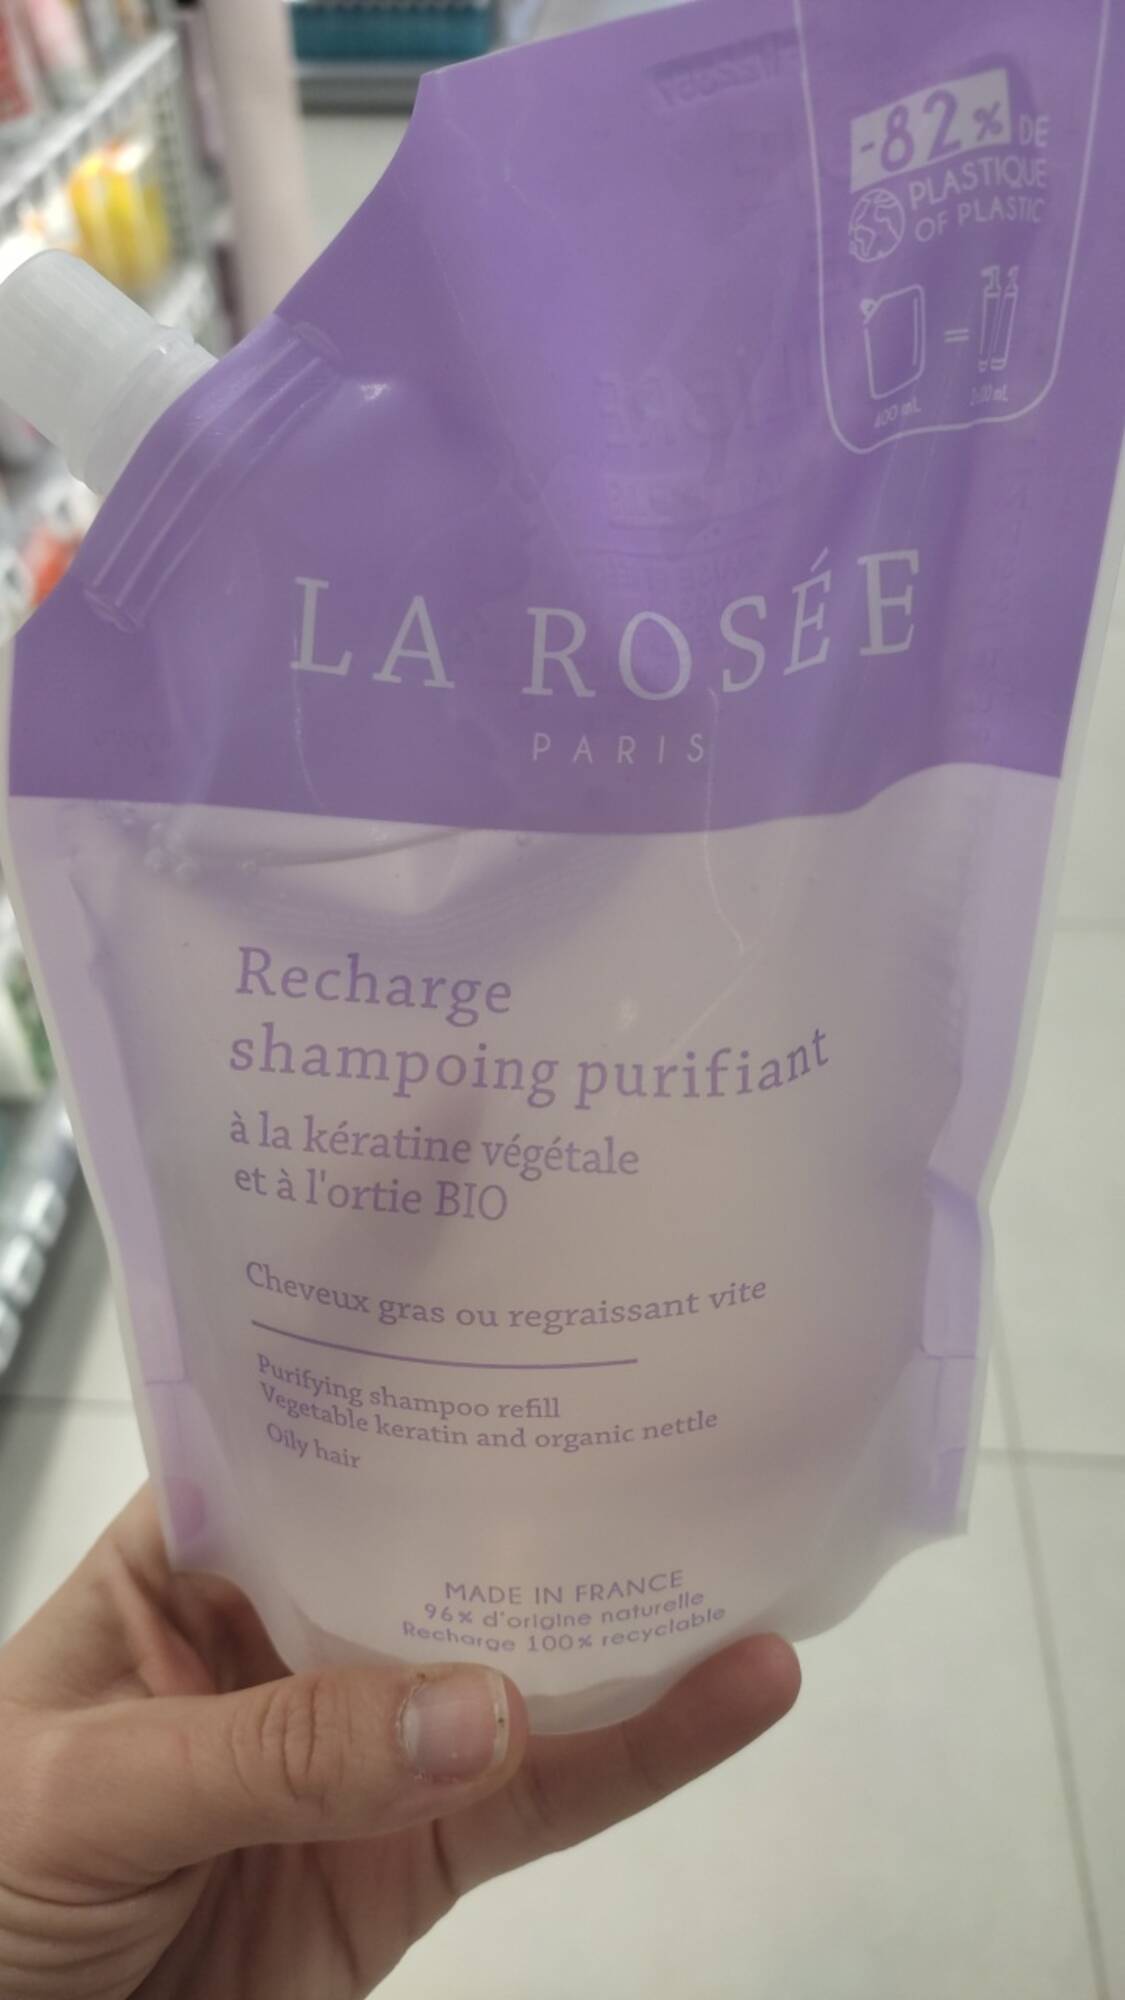 LA ROSÉE - Recharge shampoing purifiant à la kératine végétale et à l'ortie bio